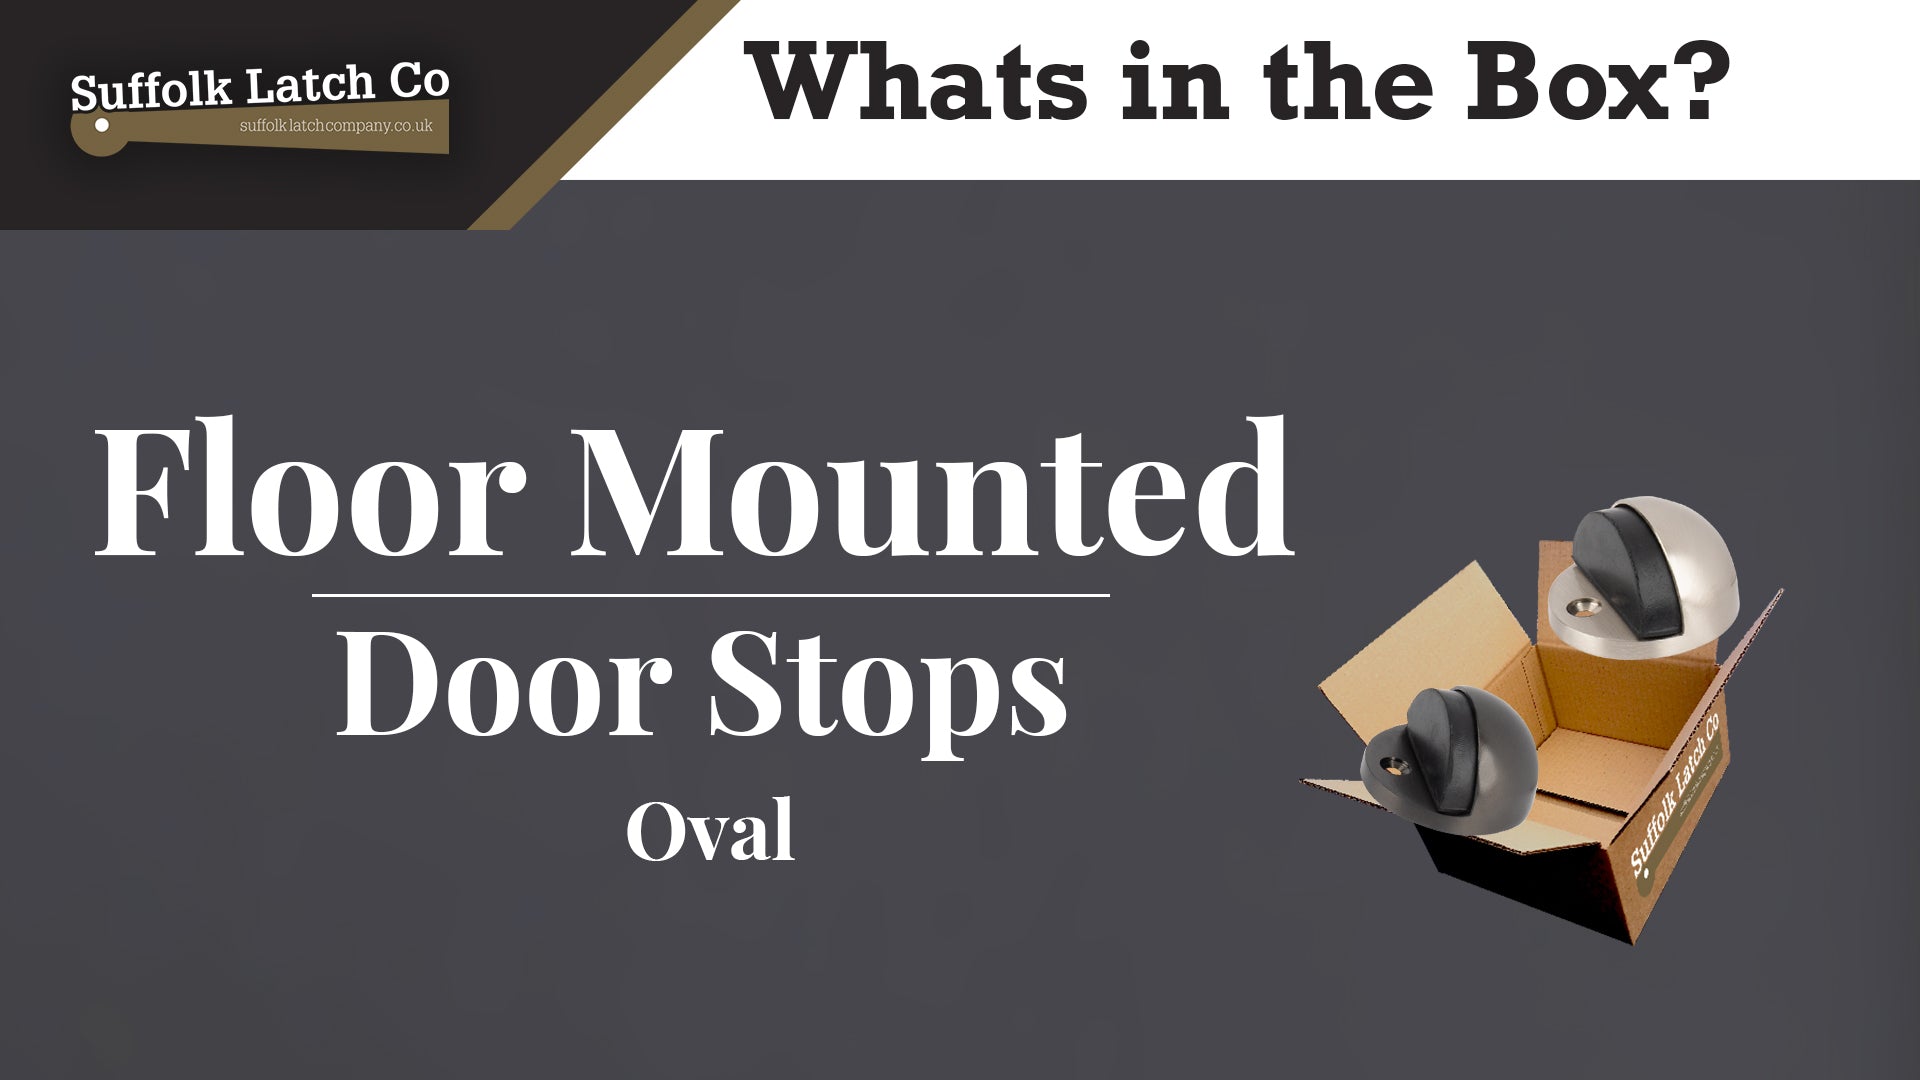 What's in the Box: Oval Floor Mounted Door Stops